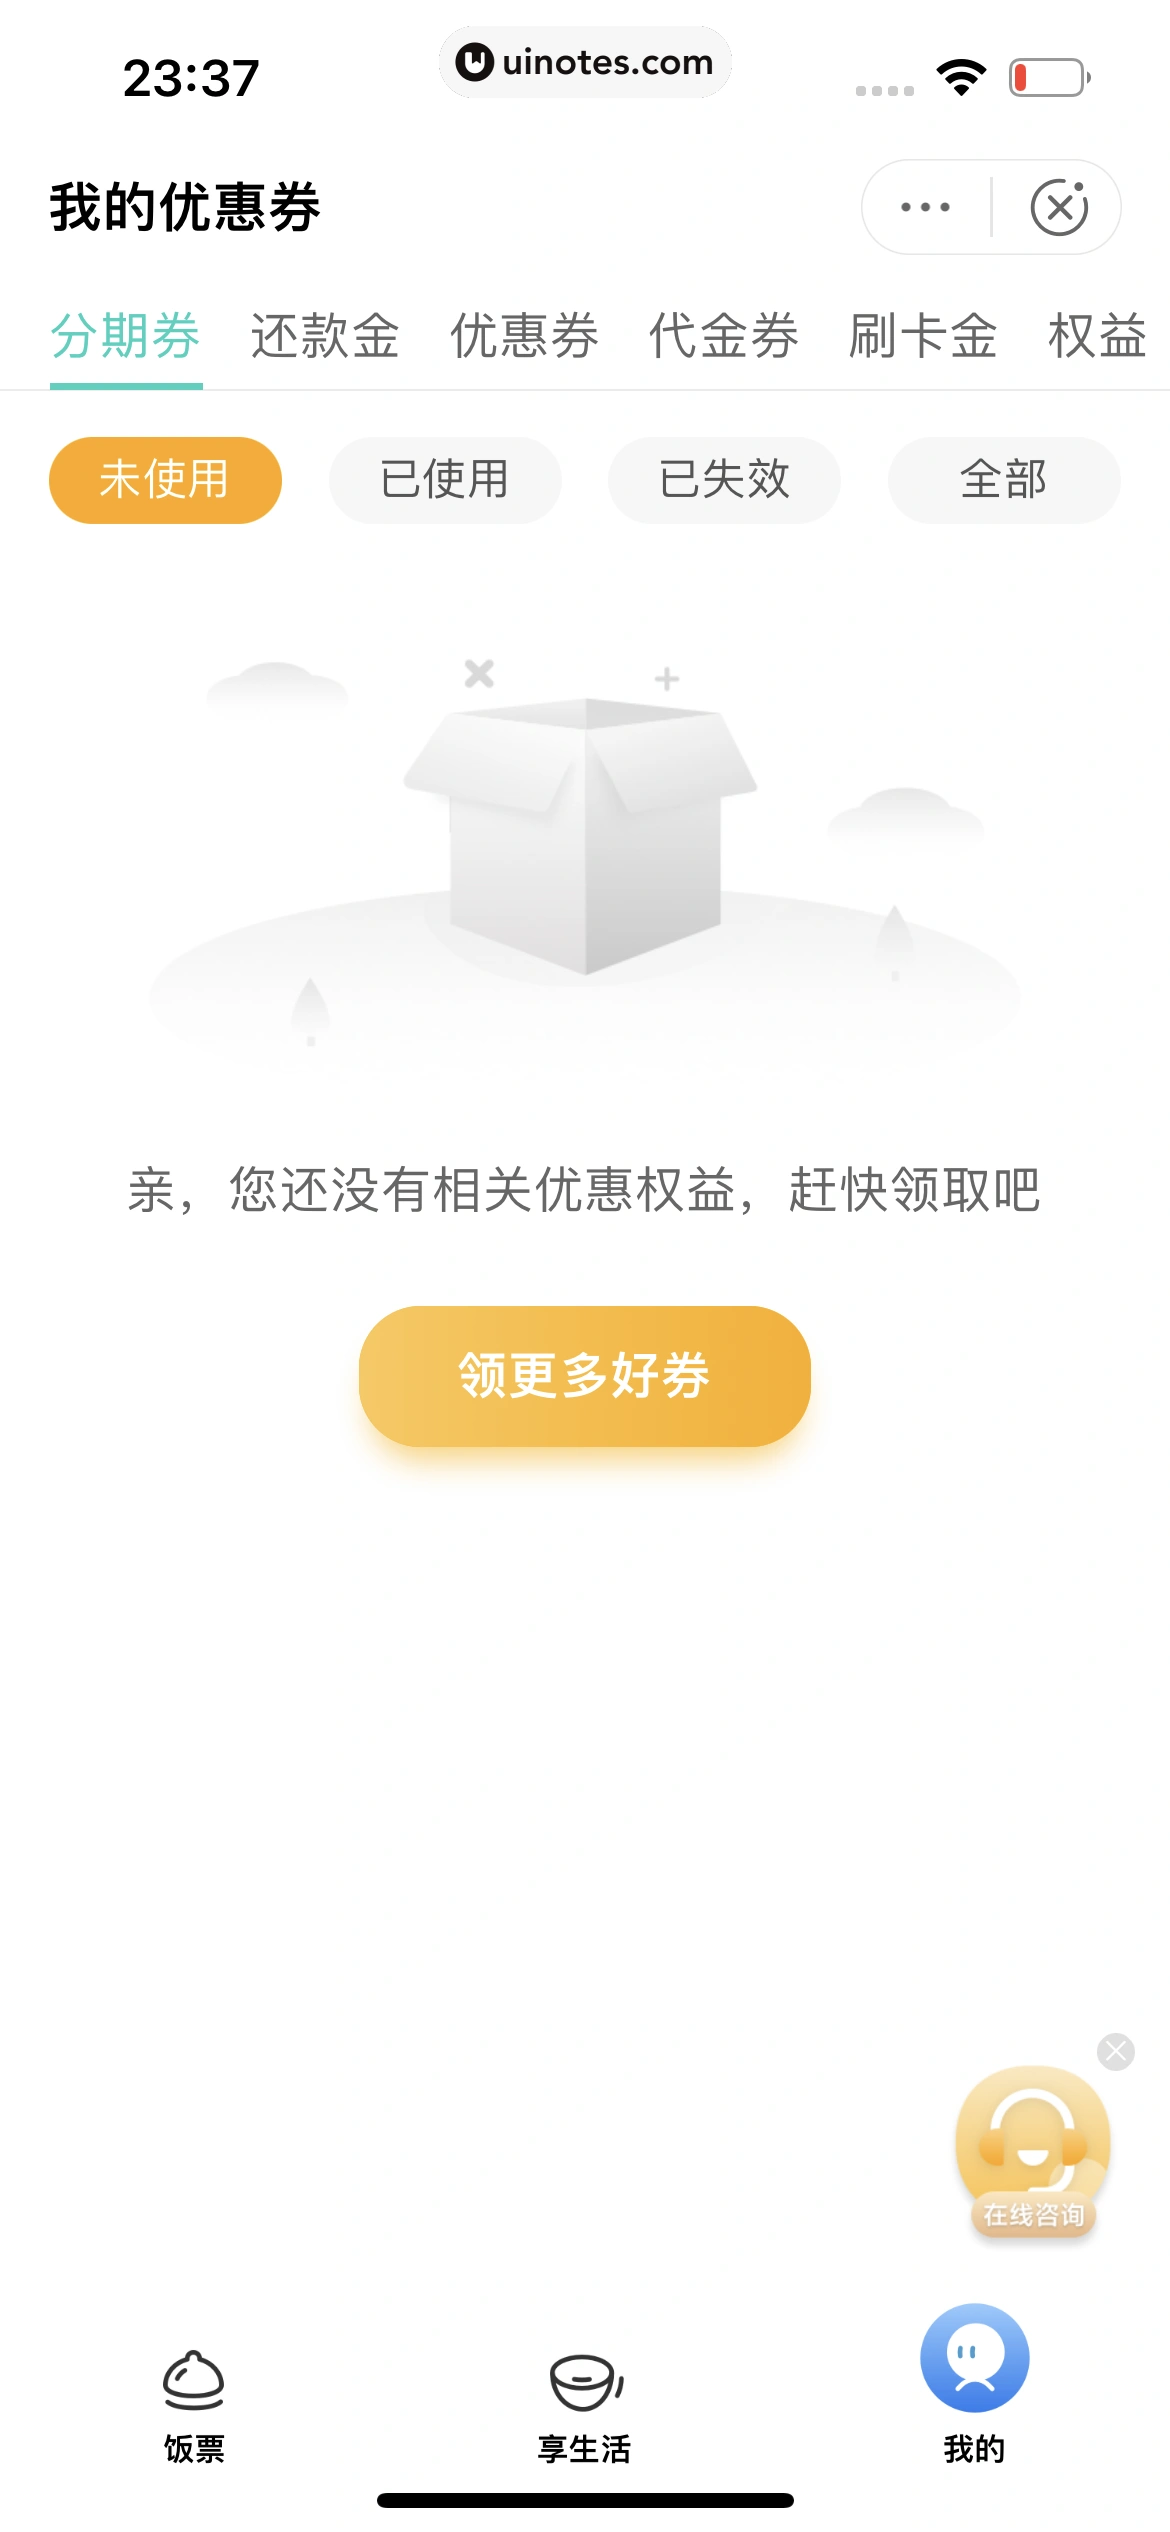 中国农业银行 App 截图 098 - UI Notes